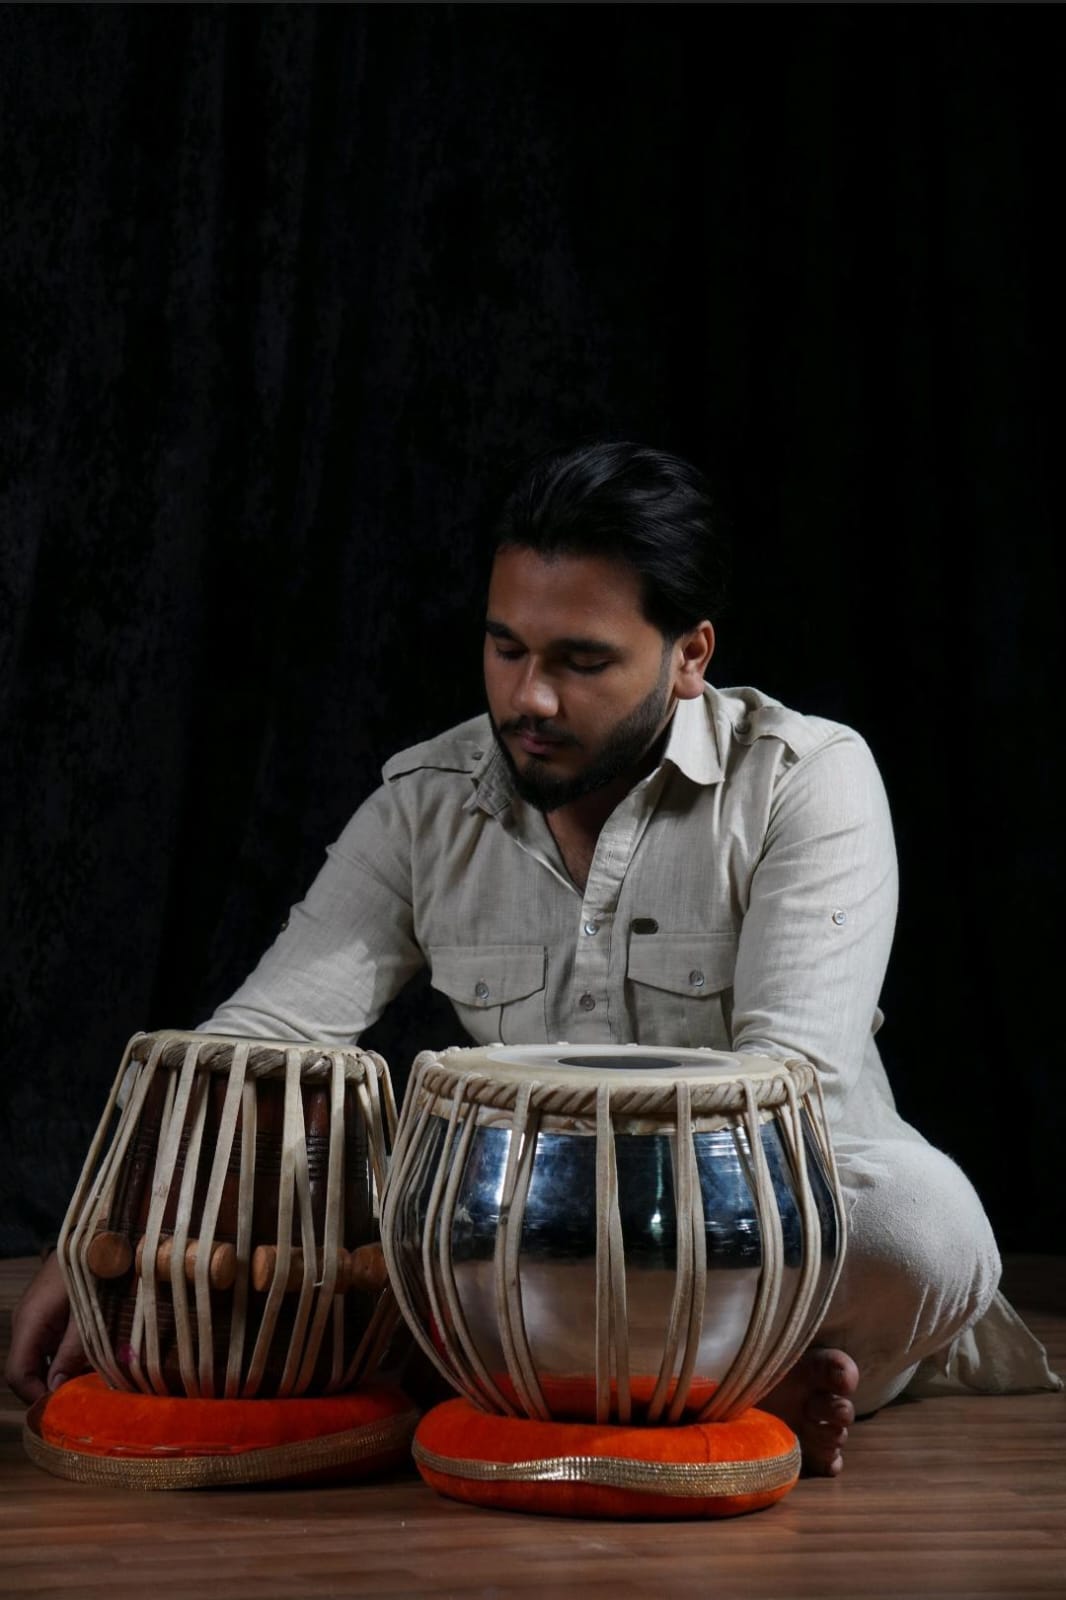 उत्तराखंड के छात्रों को संगीत और नृत्य में शिक्षा पाने के लिए सुनहरा मौका